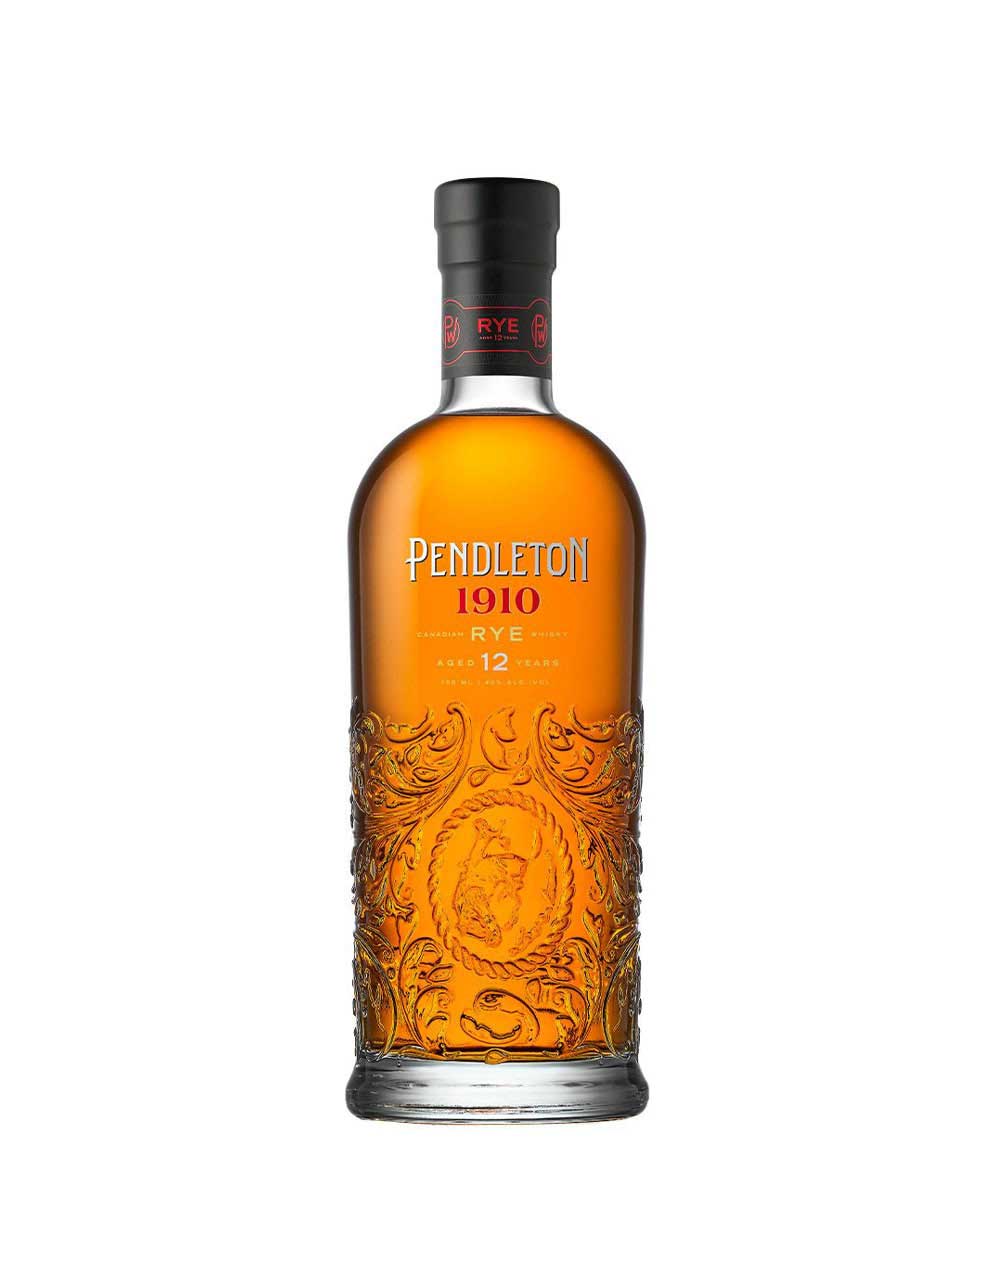 Laphroaig Cairdeas 2014 Edition Islay Single Malt Scotch Whisky